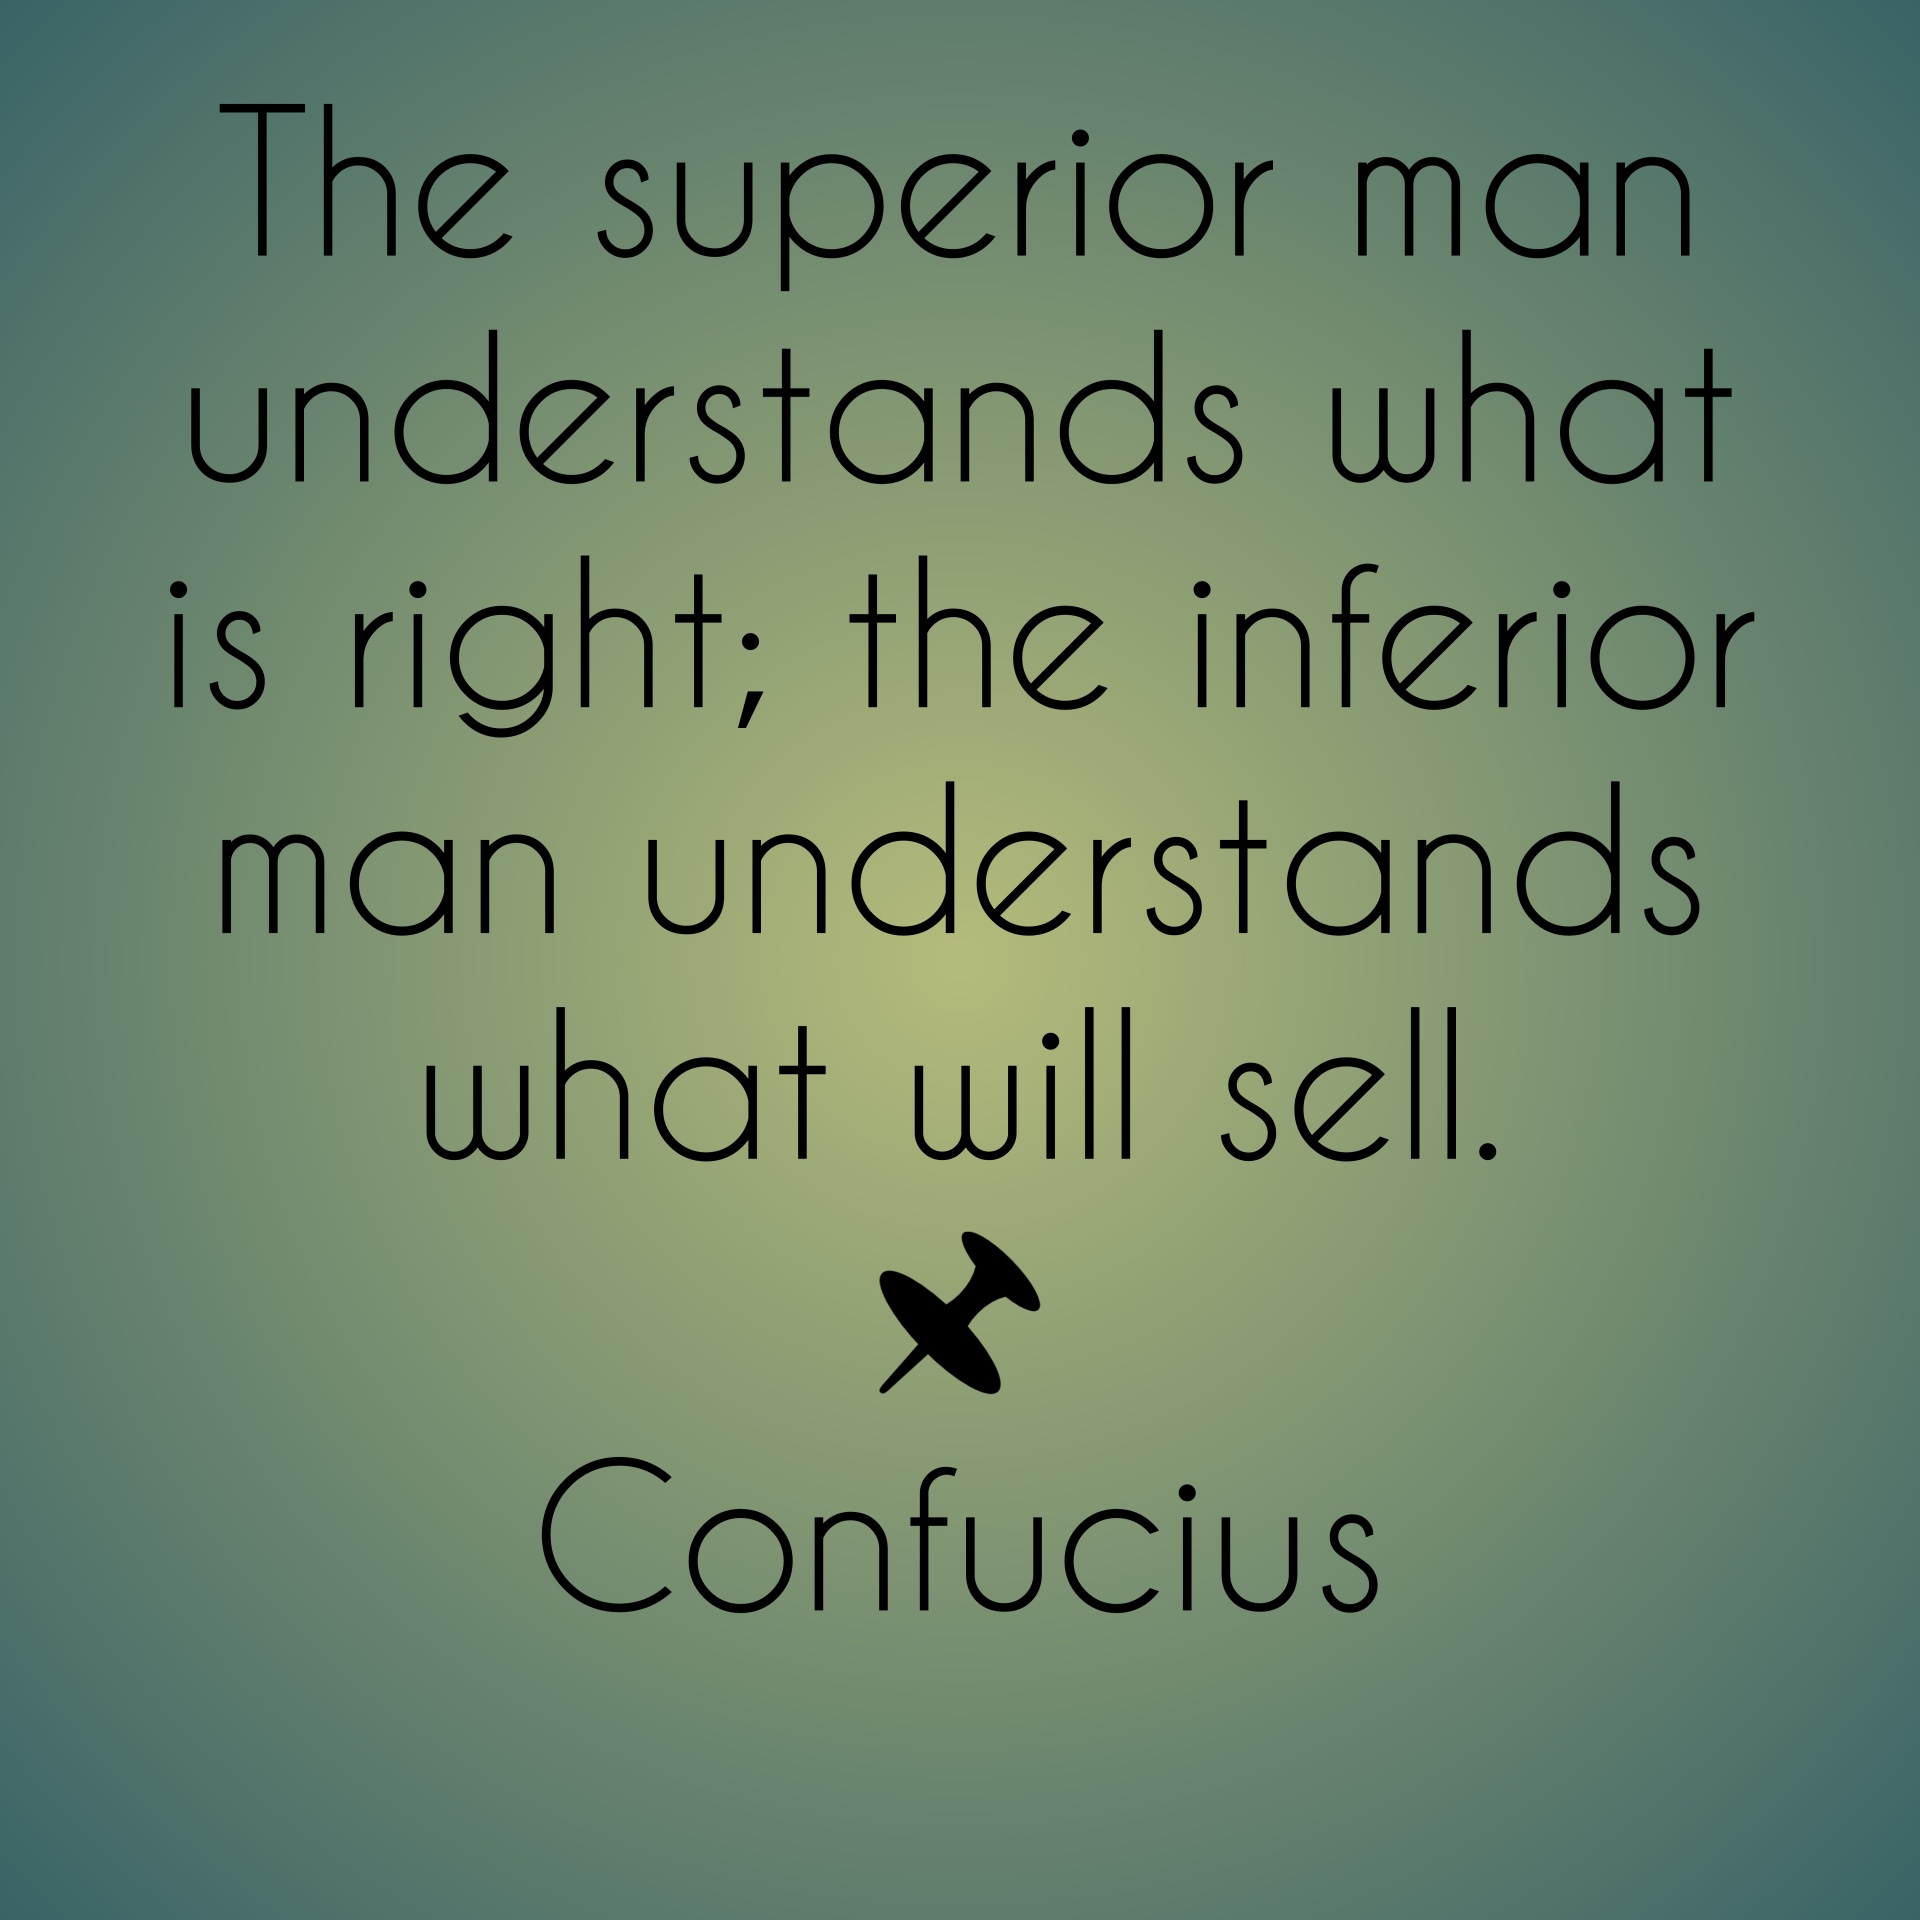 confucius quote right free photo